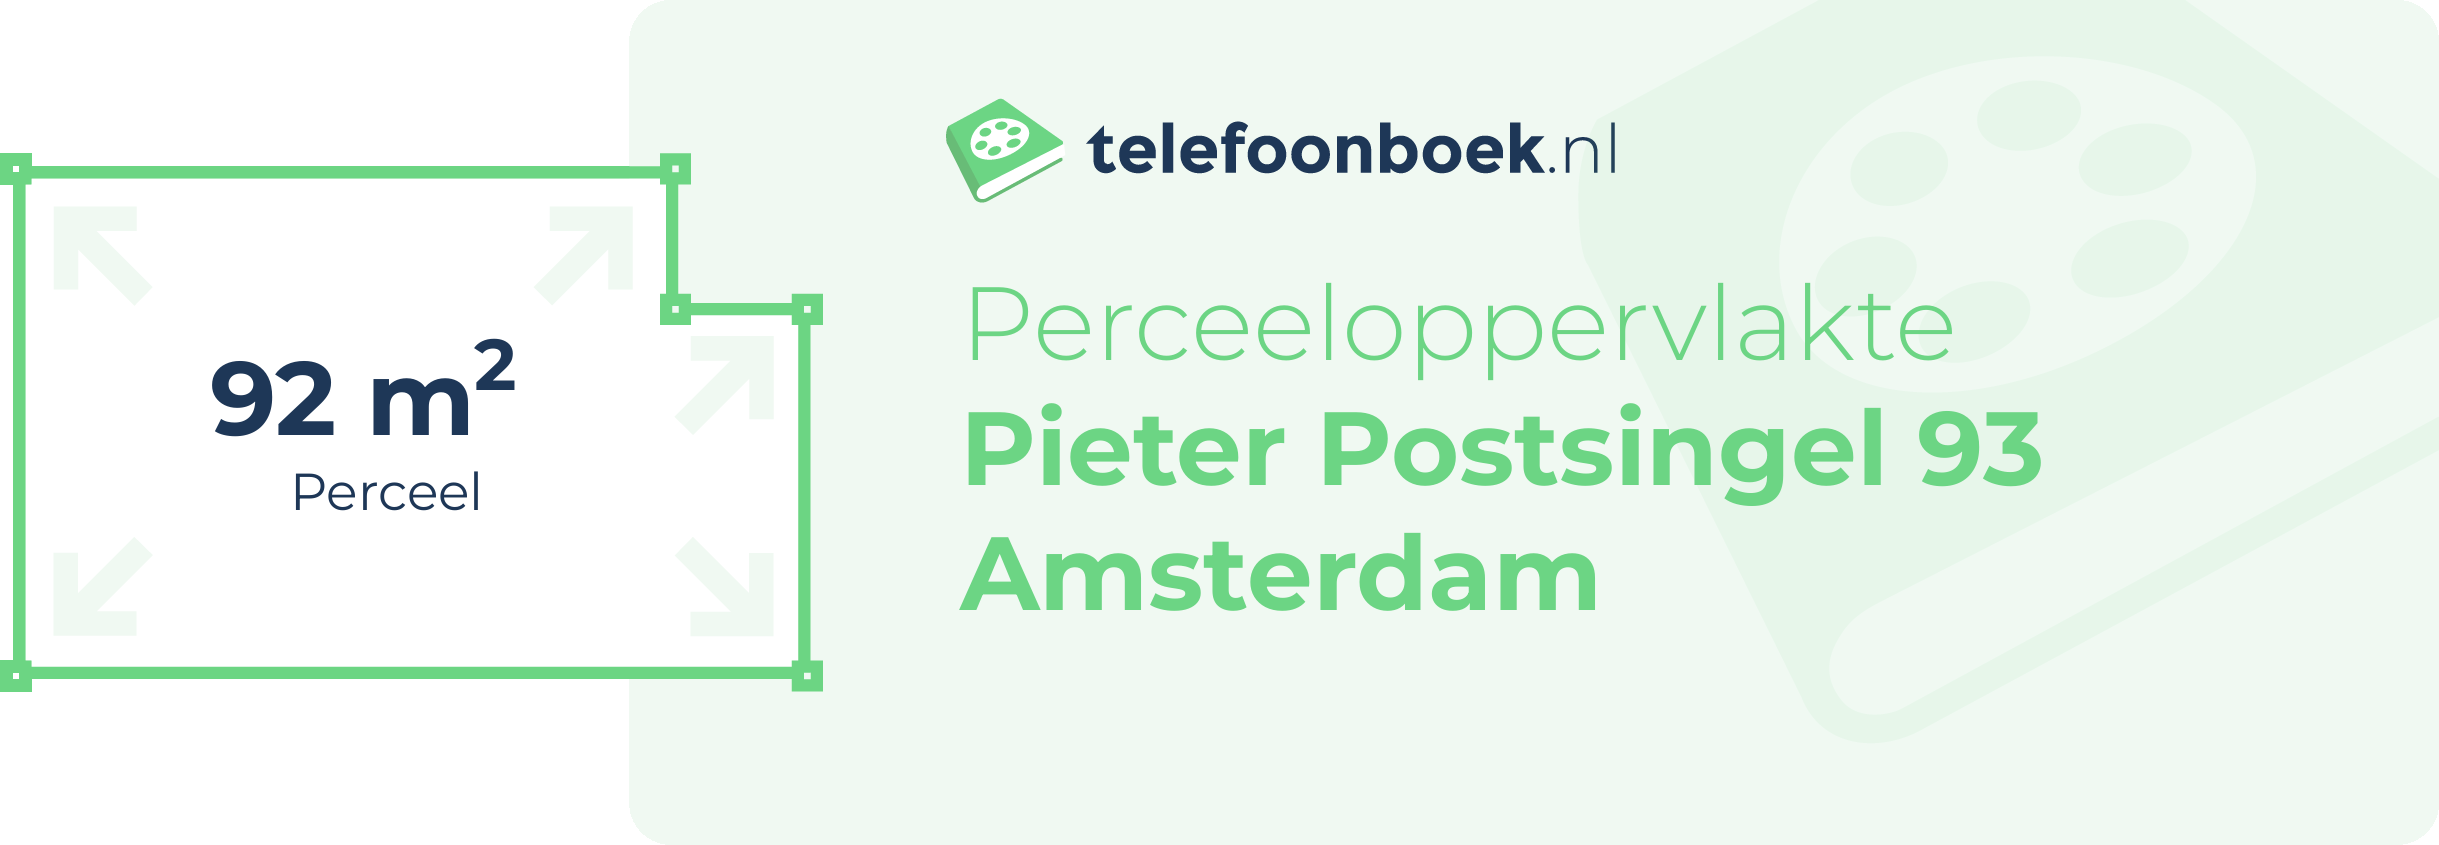 Perceeloppervlakte Pieter Postsingel 93 Amsterdam